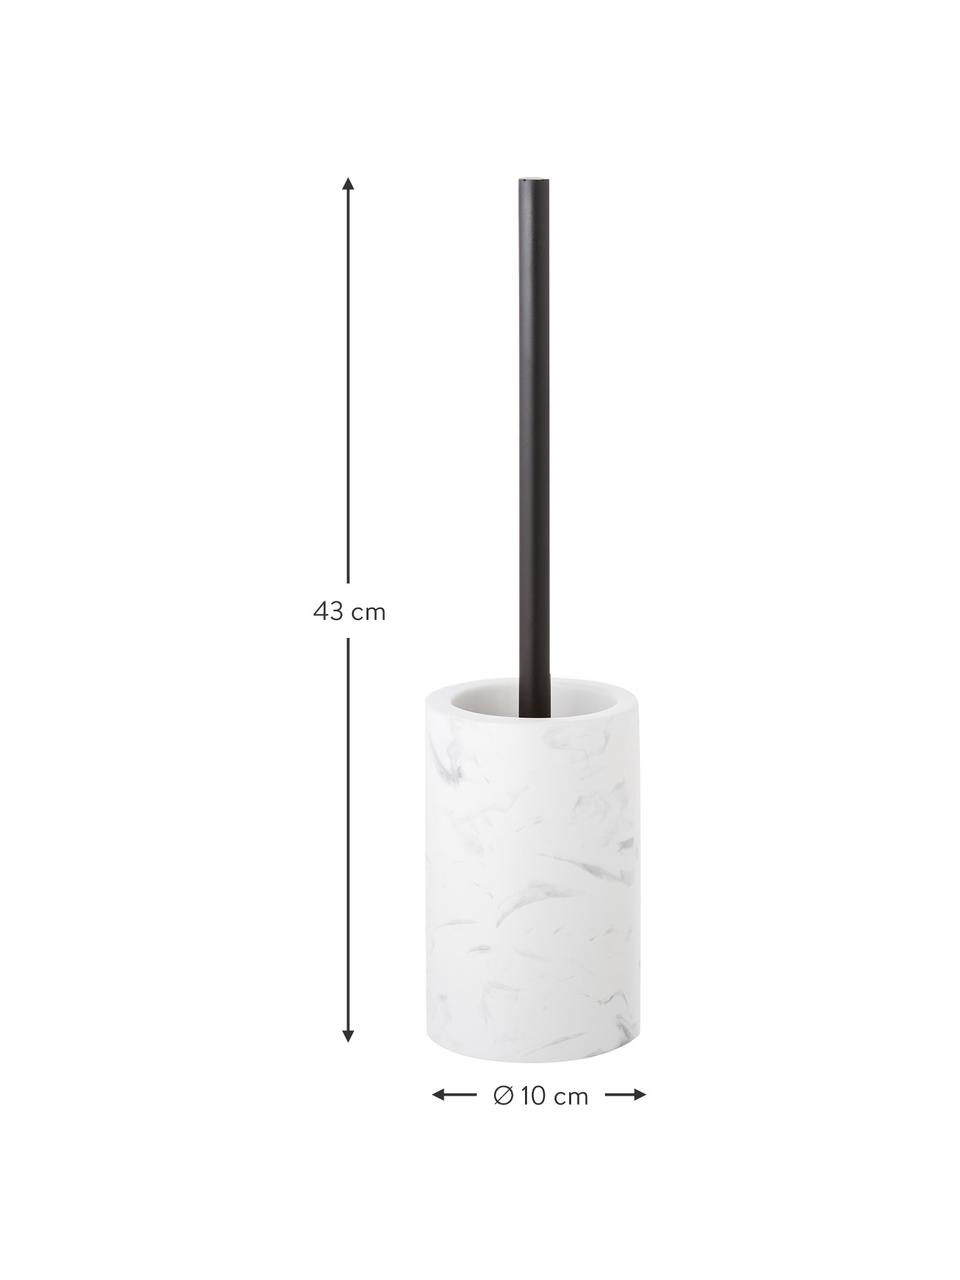 Toilettenbürste Daro mit Keramik-Behälter, Behälter: Keramik, Griff: Metall, beschichtet, Weiß, Schwarz, Ø 10 x H 43 cm